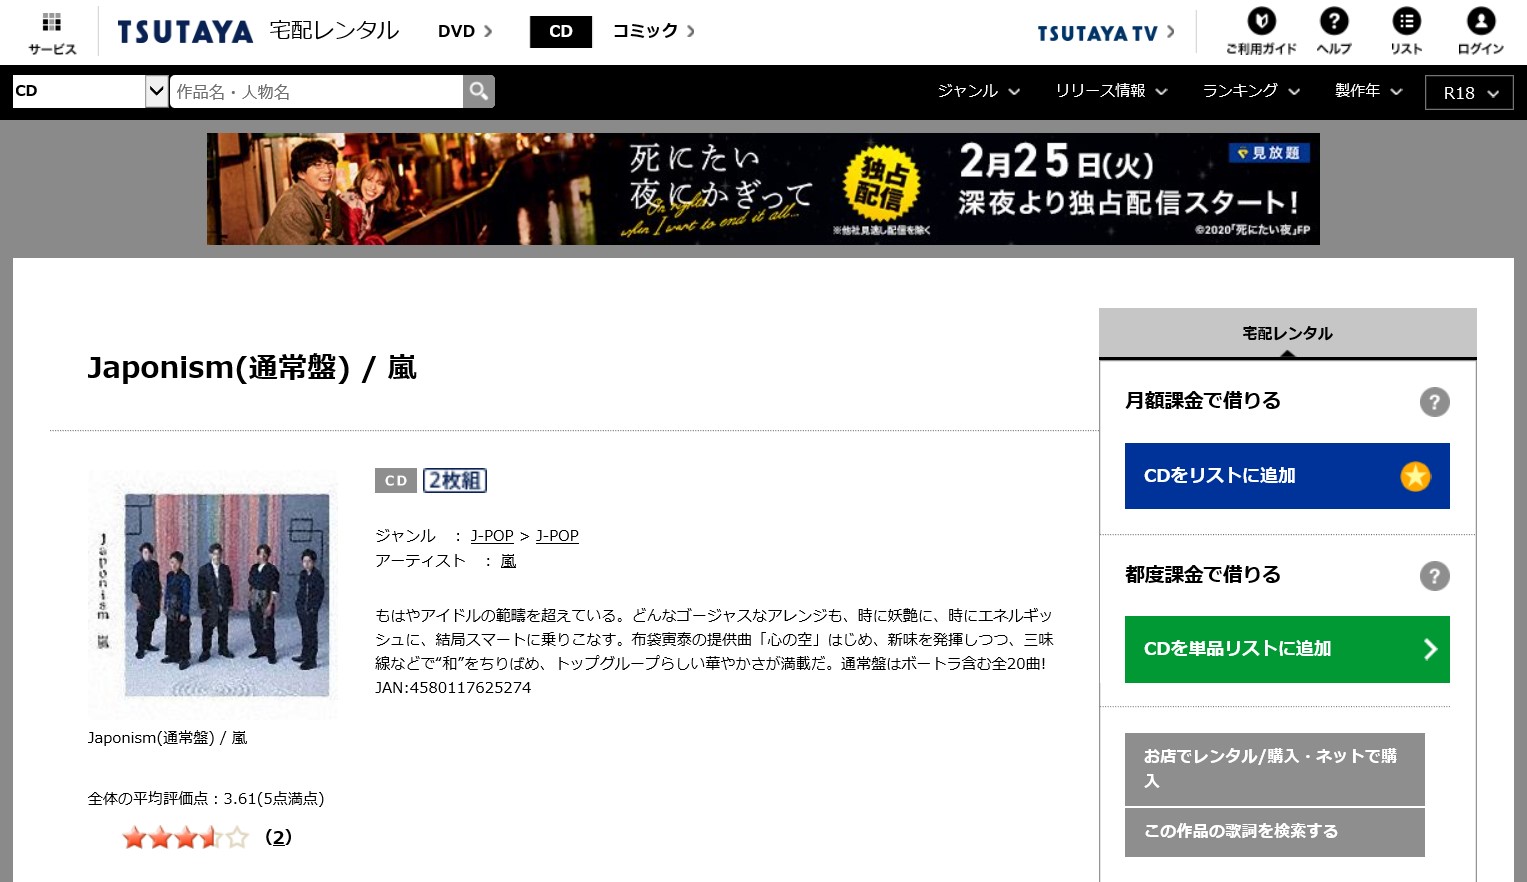 嵐 Japonism アルバム曲をmp3でダウンロードしてフル視聴する方法 音楽の森